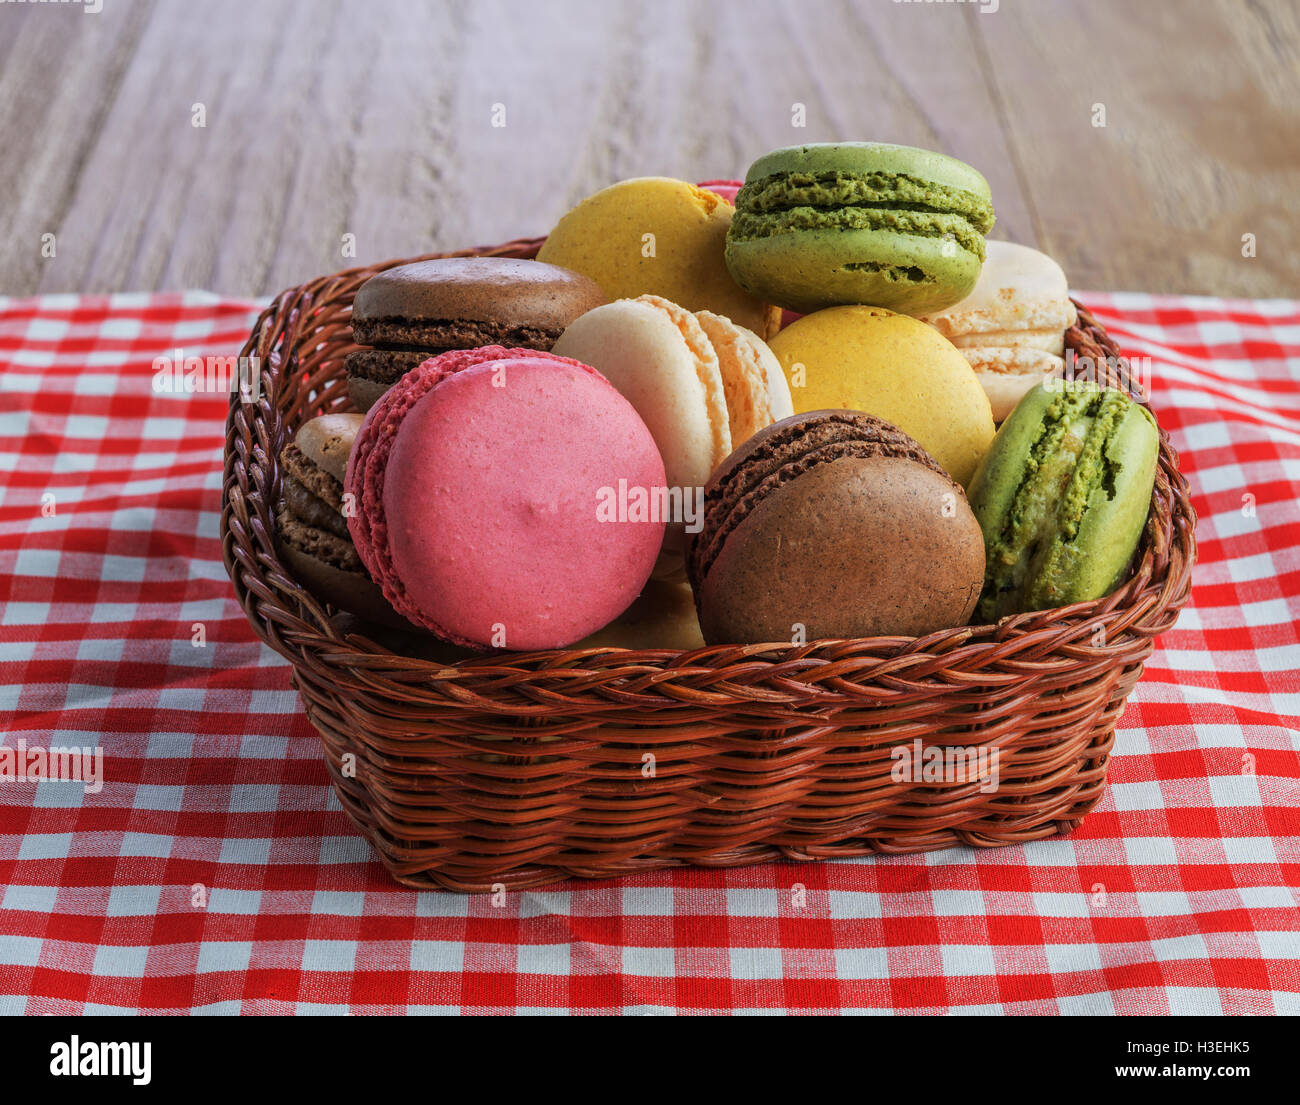 Colorés et savoureux macarons français sur le panier en osier Banque D'Images